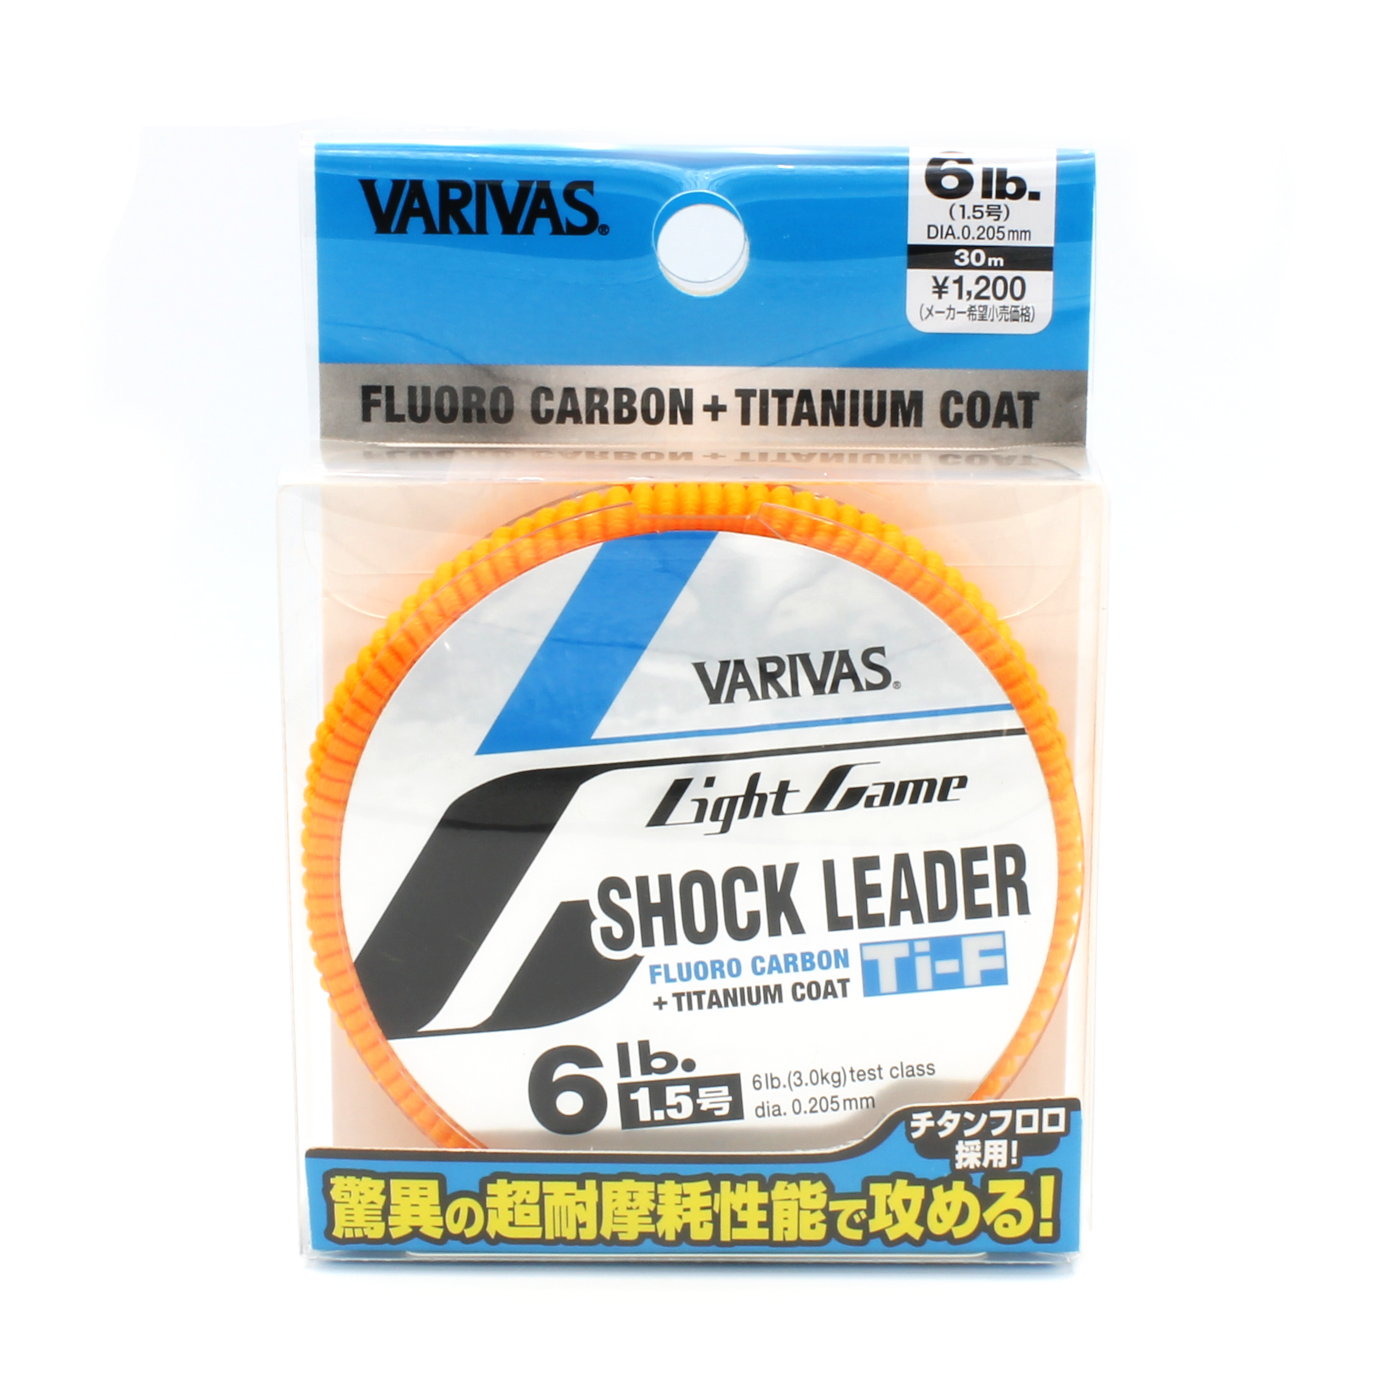 Morris Shock Leader VARIVAS Light Game Fluorocarbon 30m 1.2 No 5lb Natural for sale online 